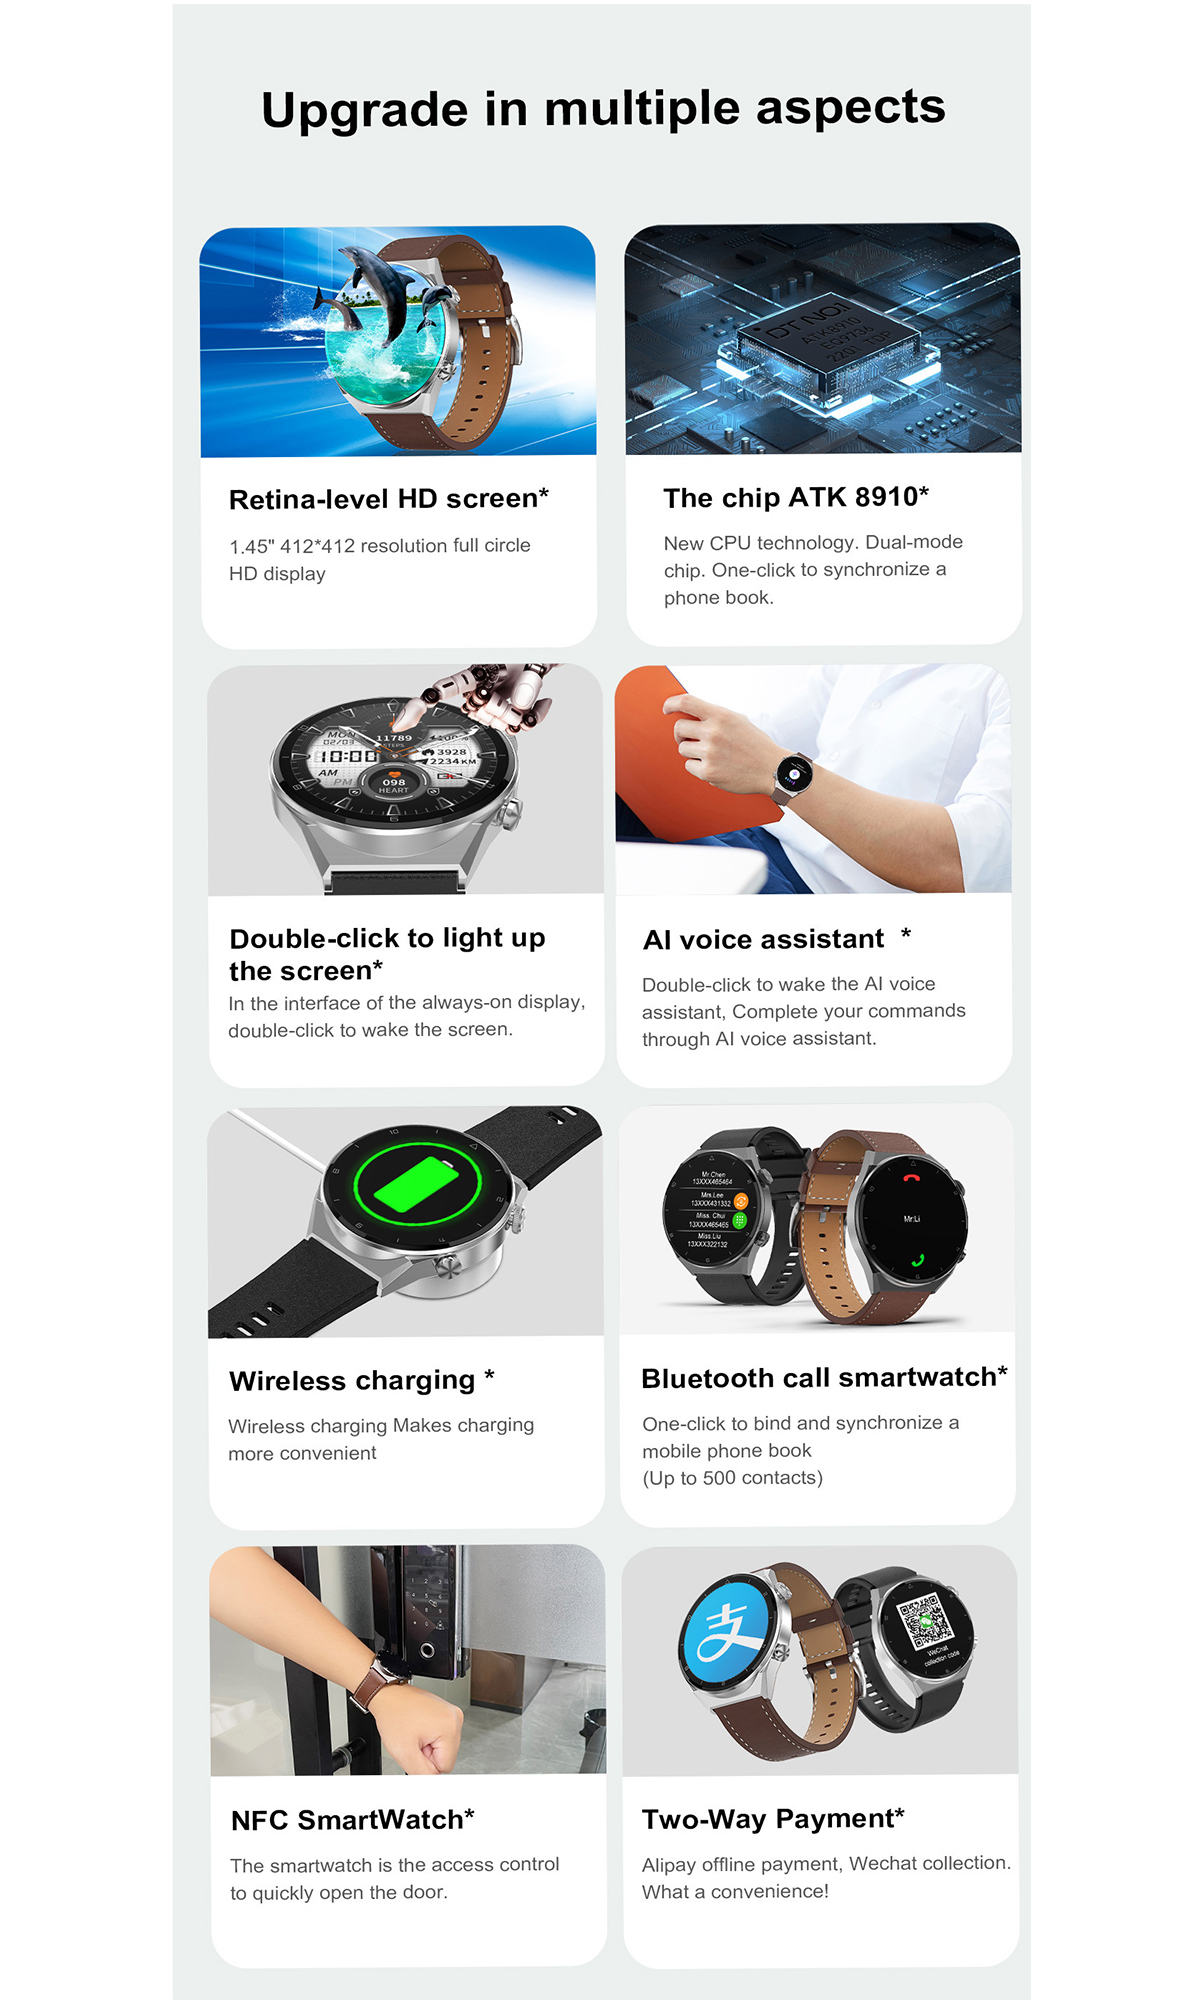 BRIGHTAKE Sport-Smartwatch mit Braun Leder, Herzfrequenzmonitor Zahlungsfunktion & Drahtloser Smartwatch